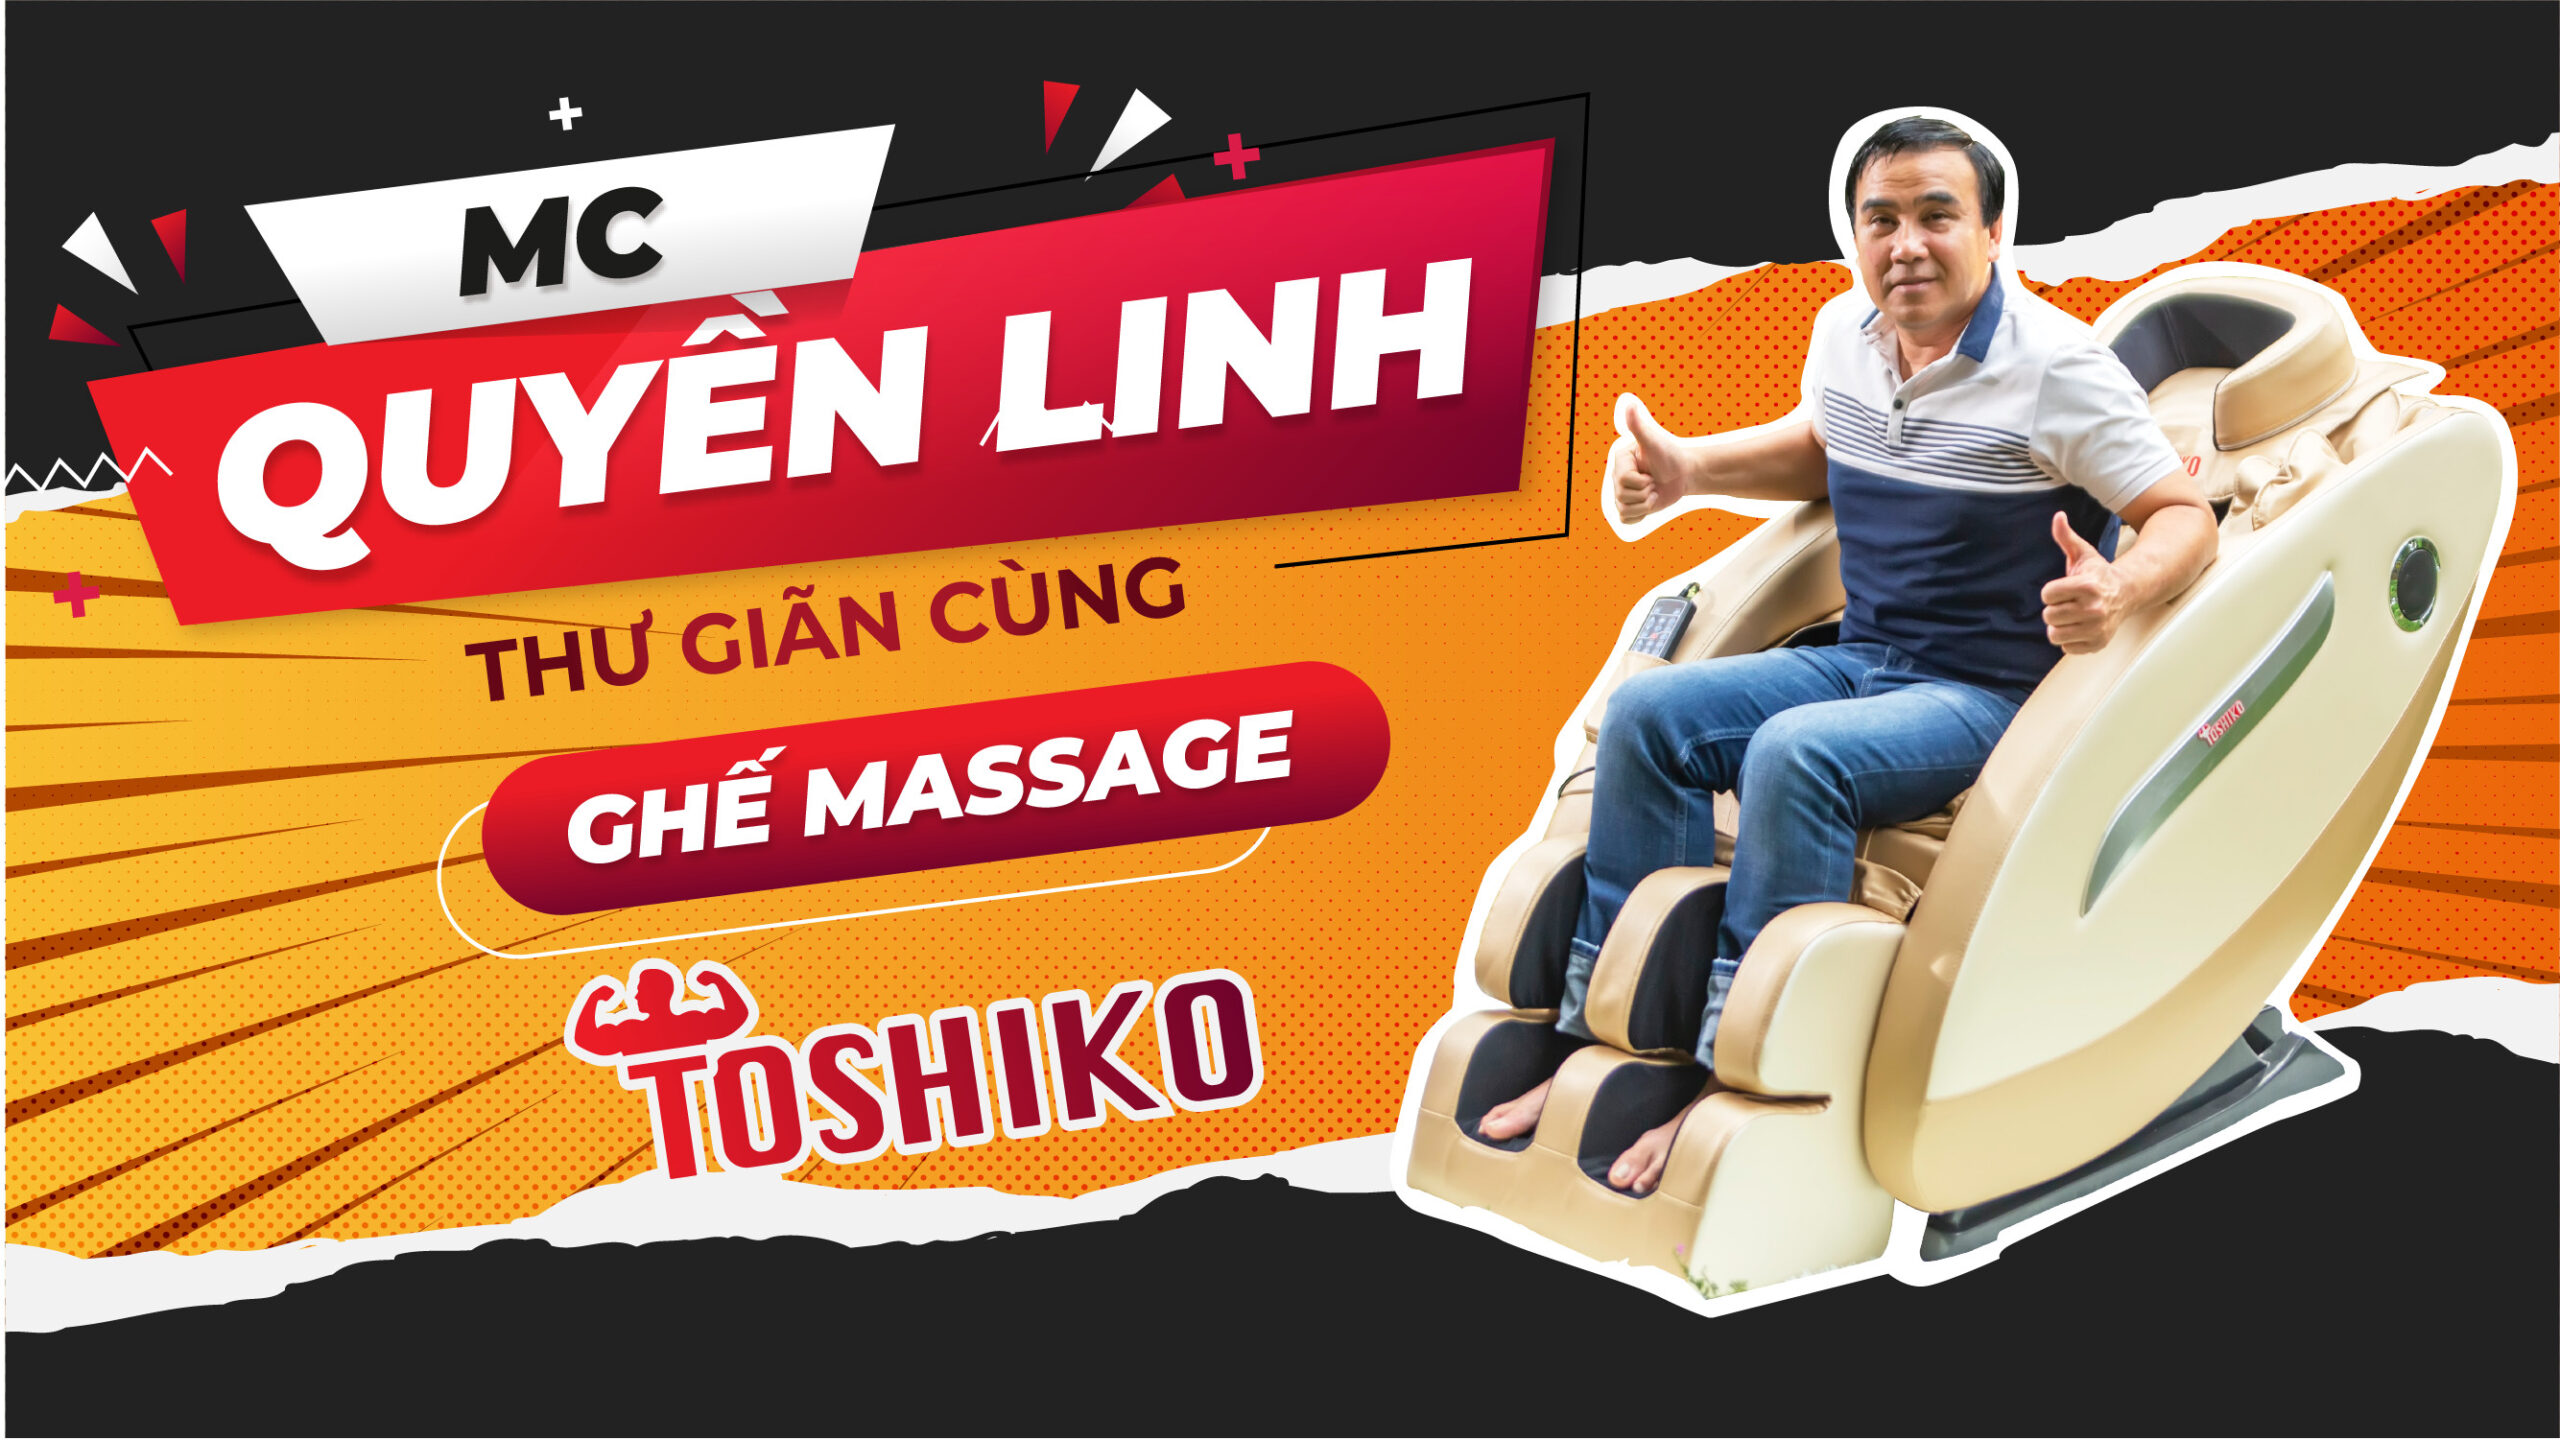 MC Quyền Linh tin dùng ghế massage-2